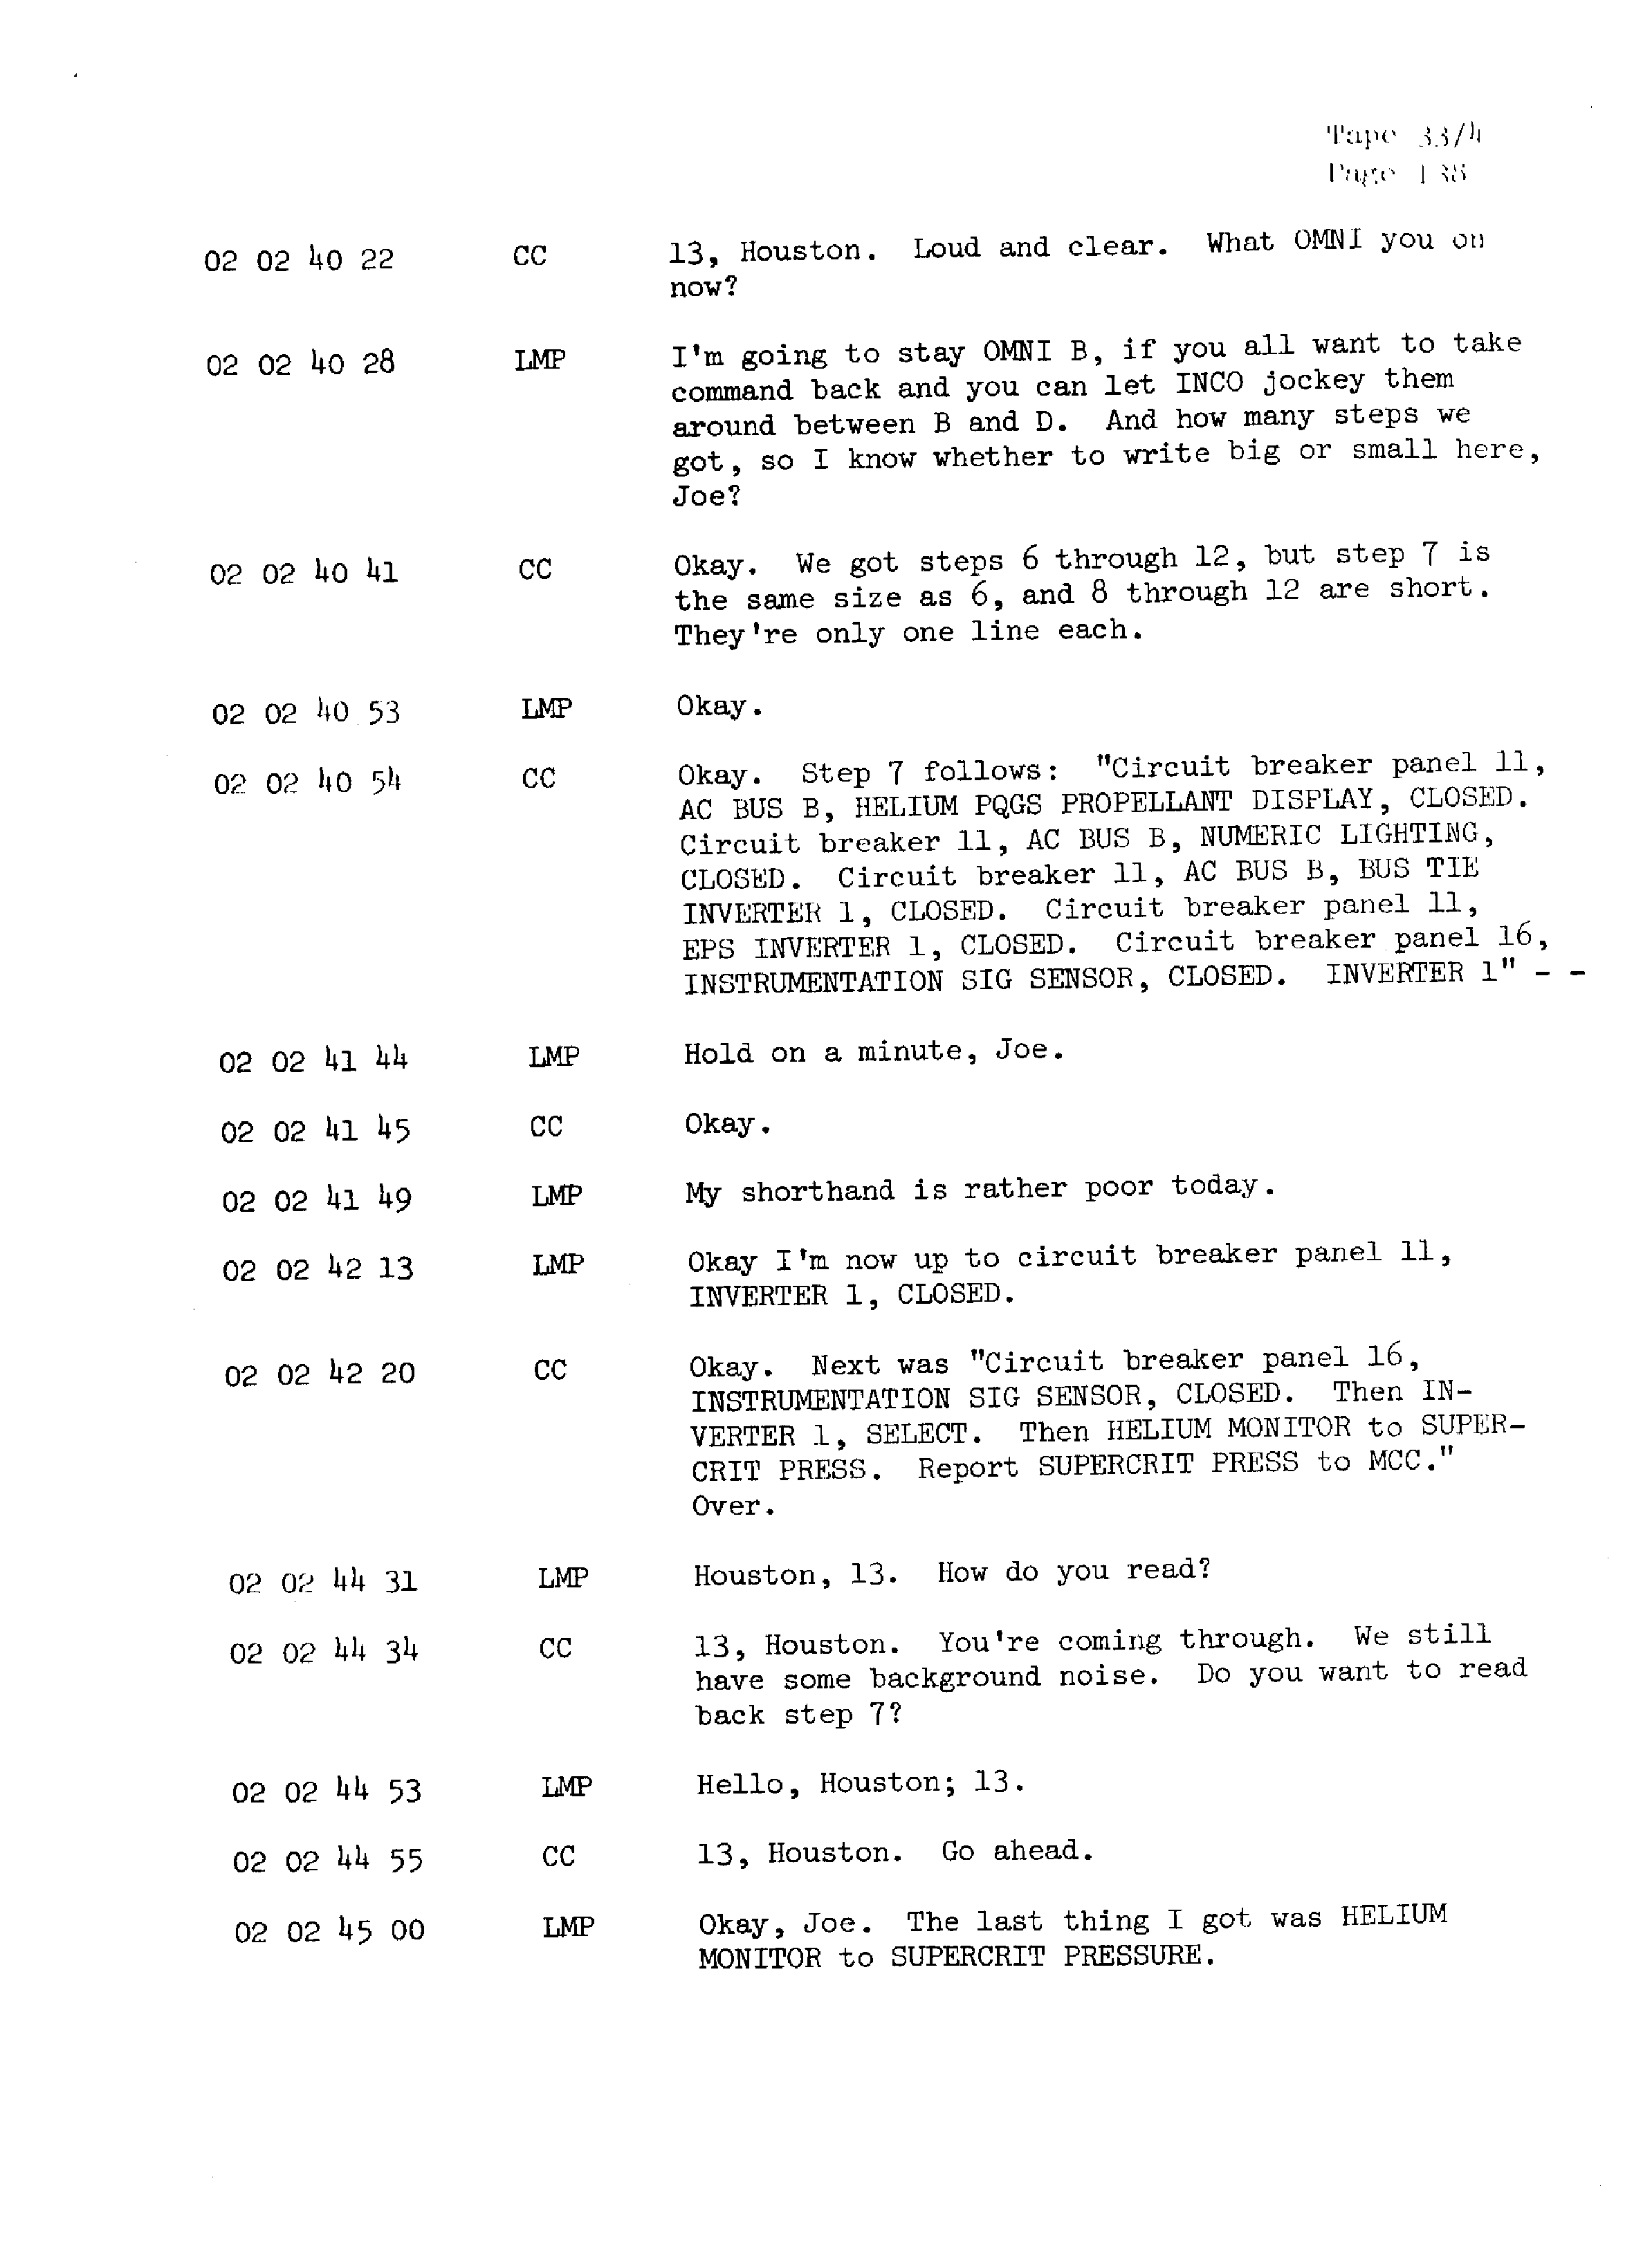 Page 145 of Apollo 13’s original transcript